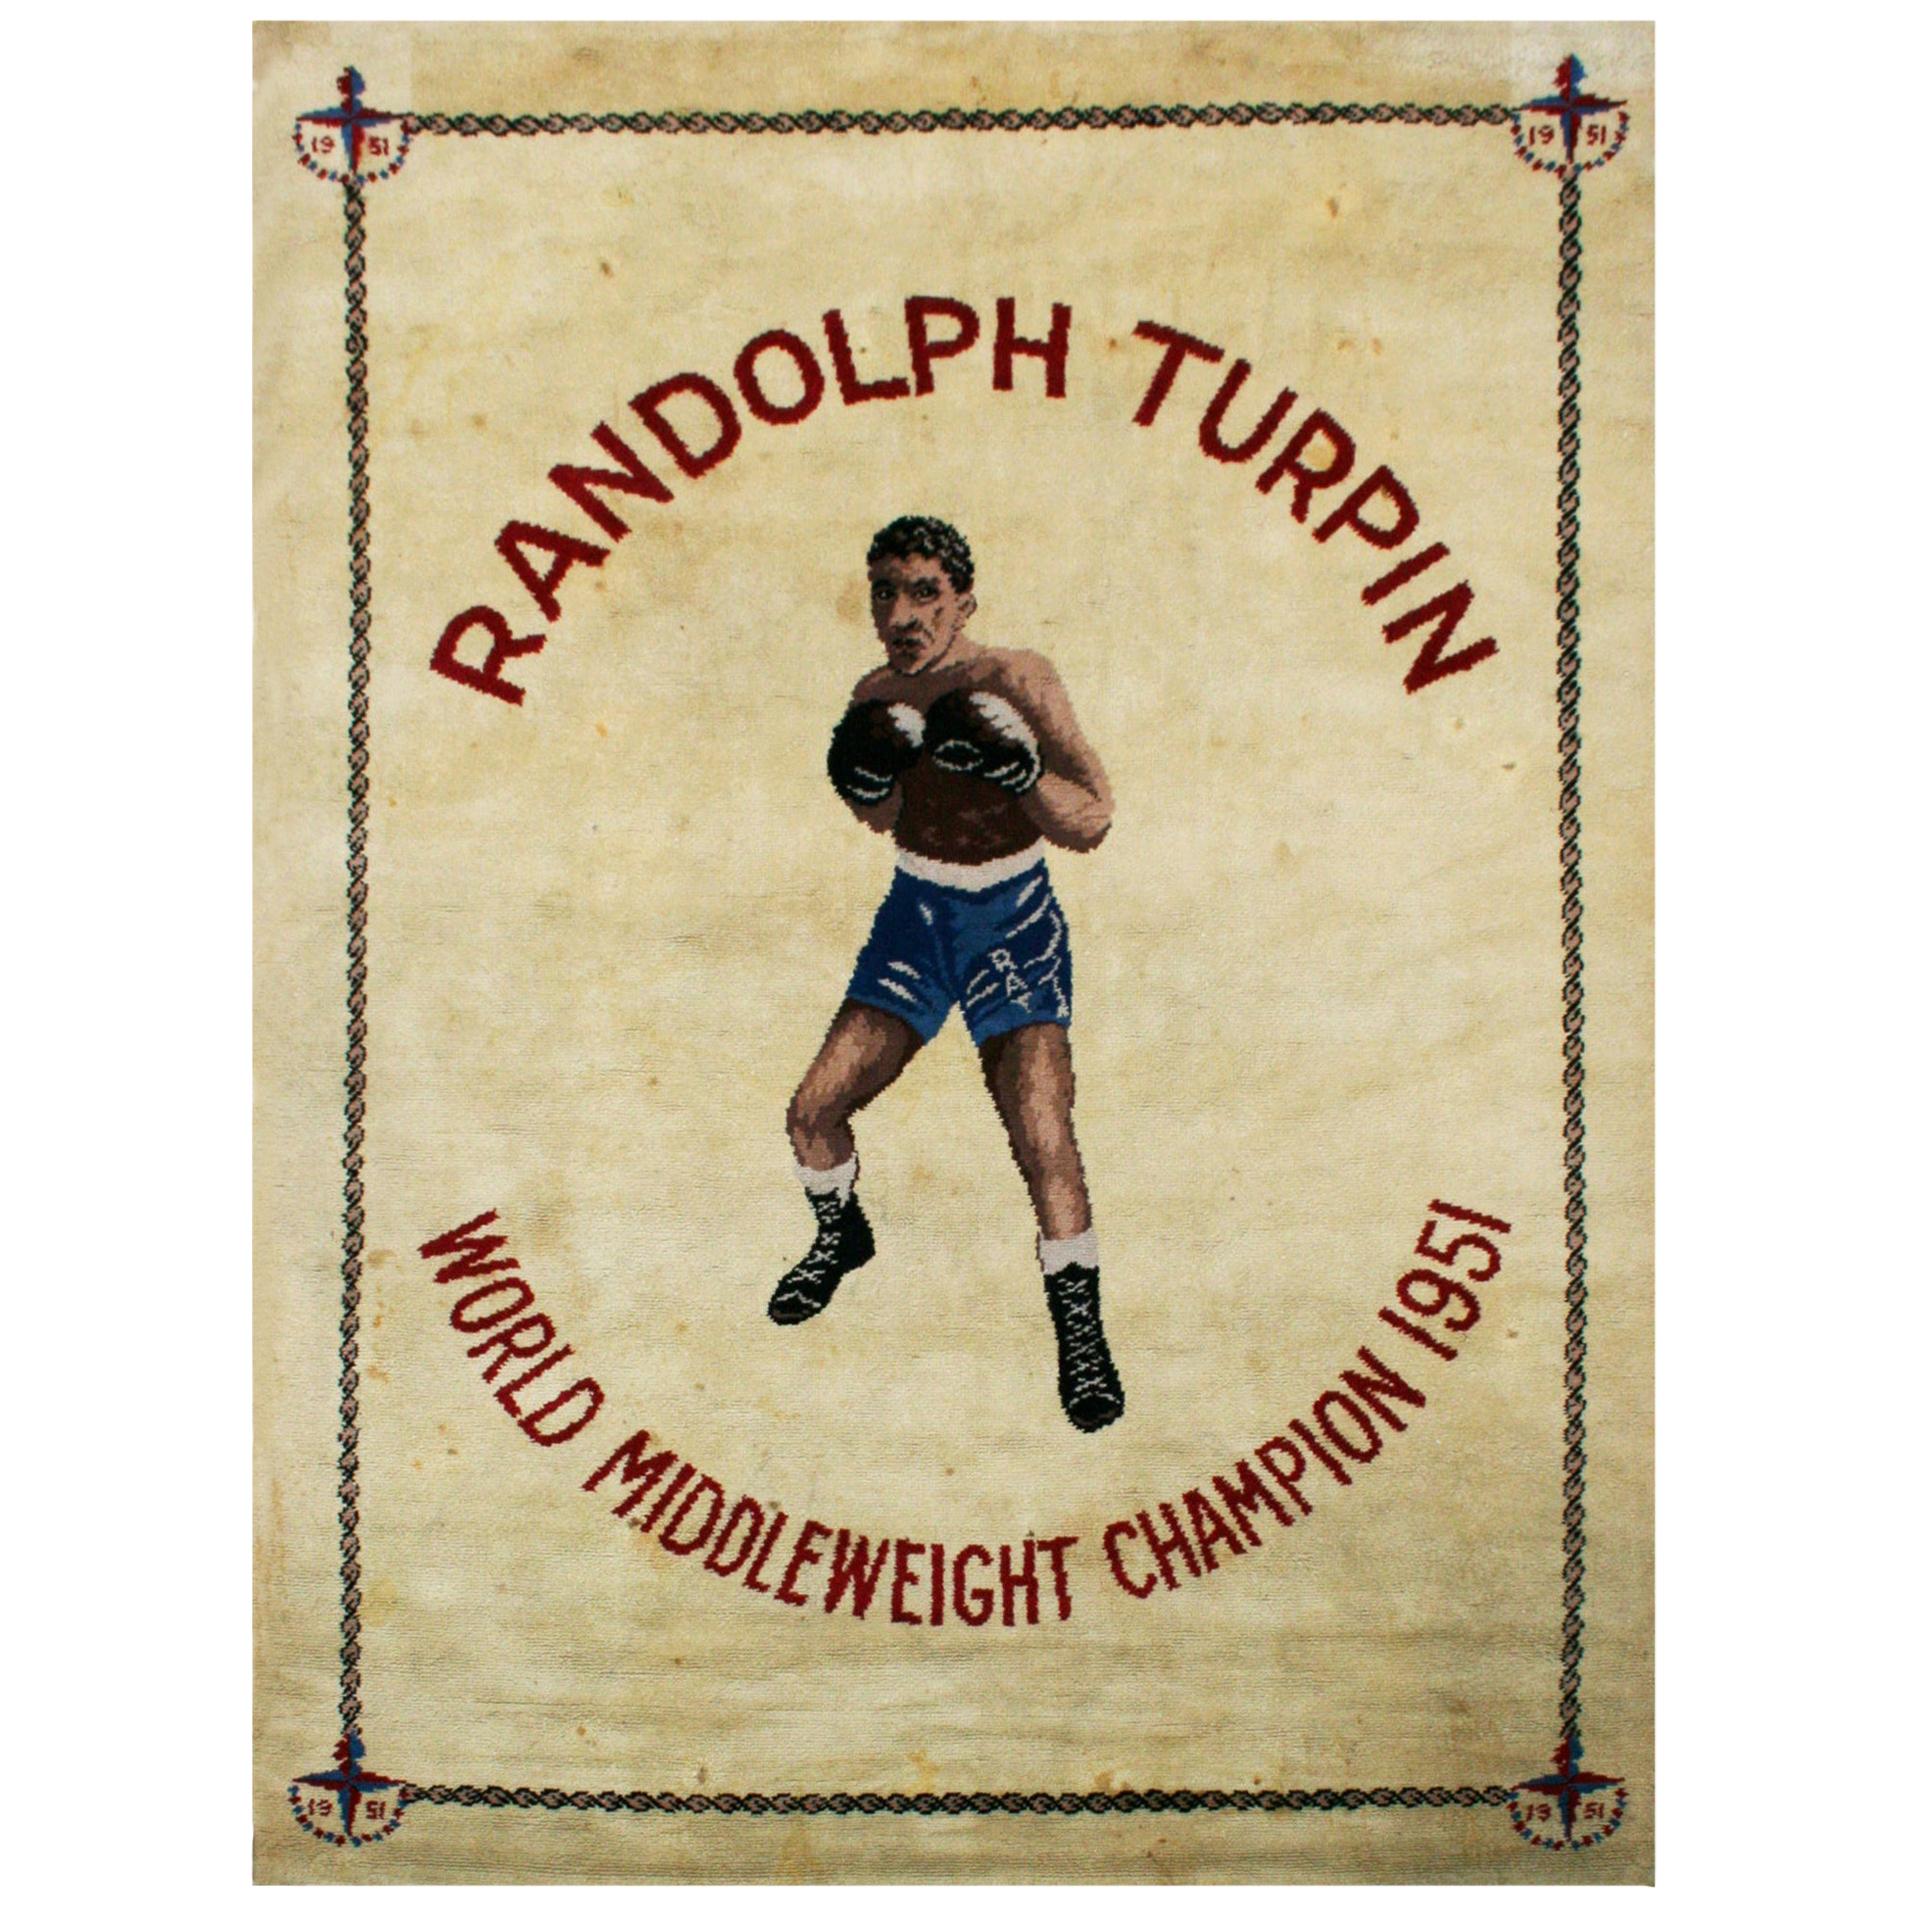 Tapis de boxe Randolph Turpin, champion moyenweight du monde, Sugar Ray en vente